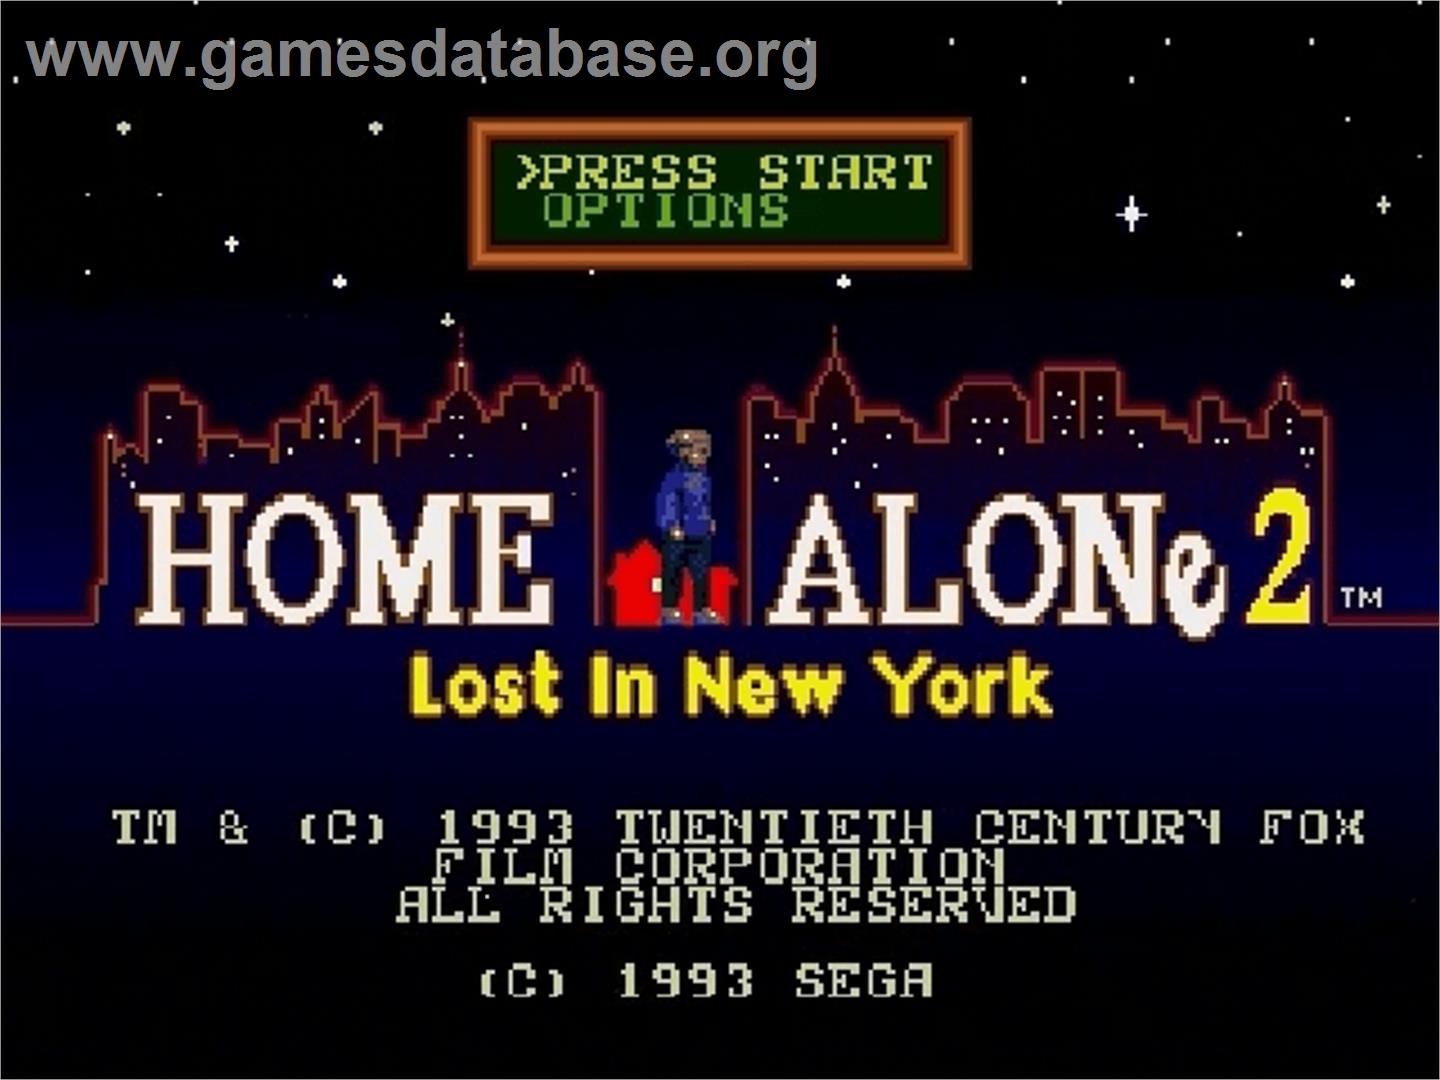 Home Alone 2 - Lost in New York - Sega Genesis - Artwork - Title Screen